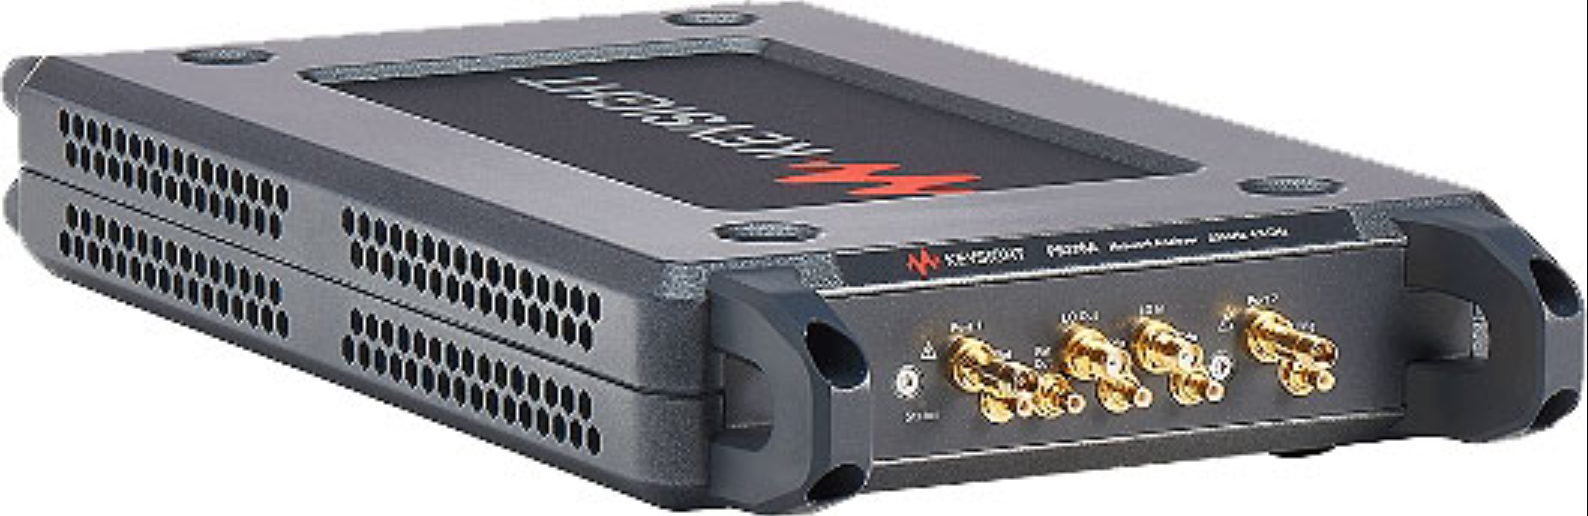 是德科技 P937xA 精简系列 USB 矢量网络分析仪